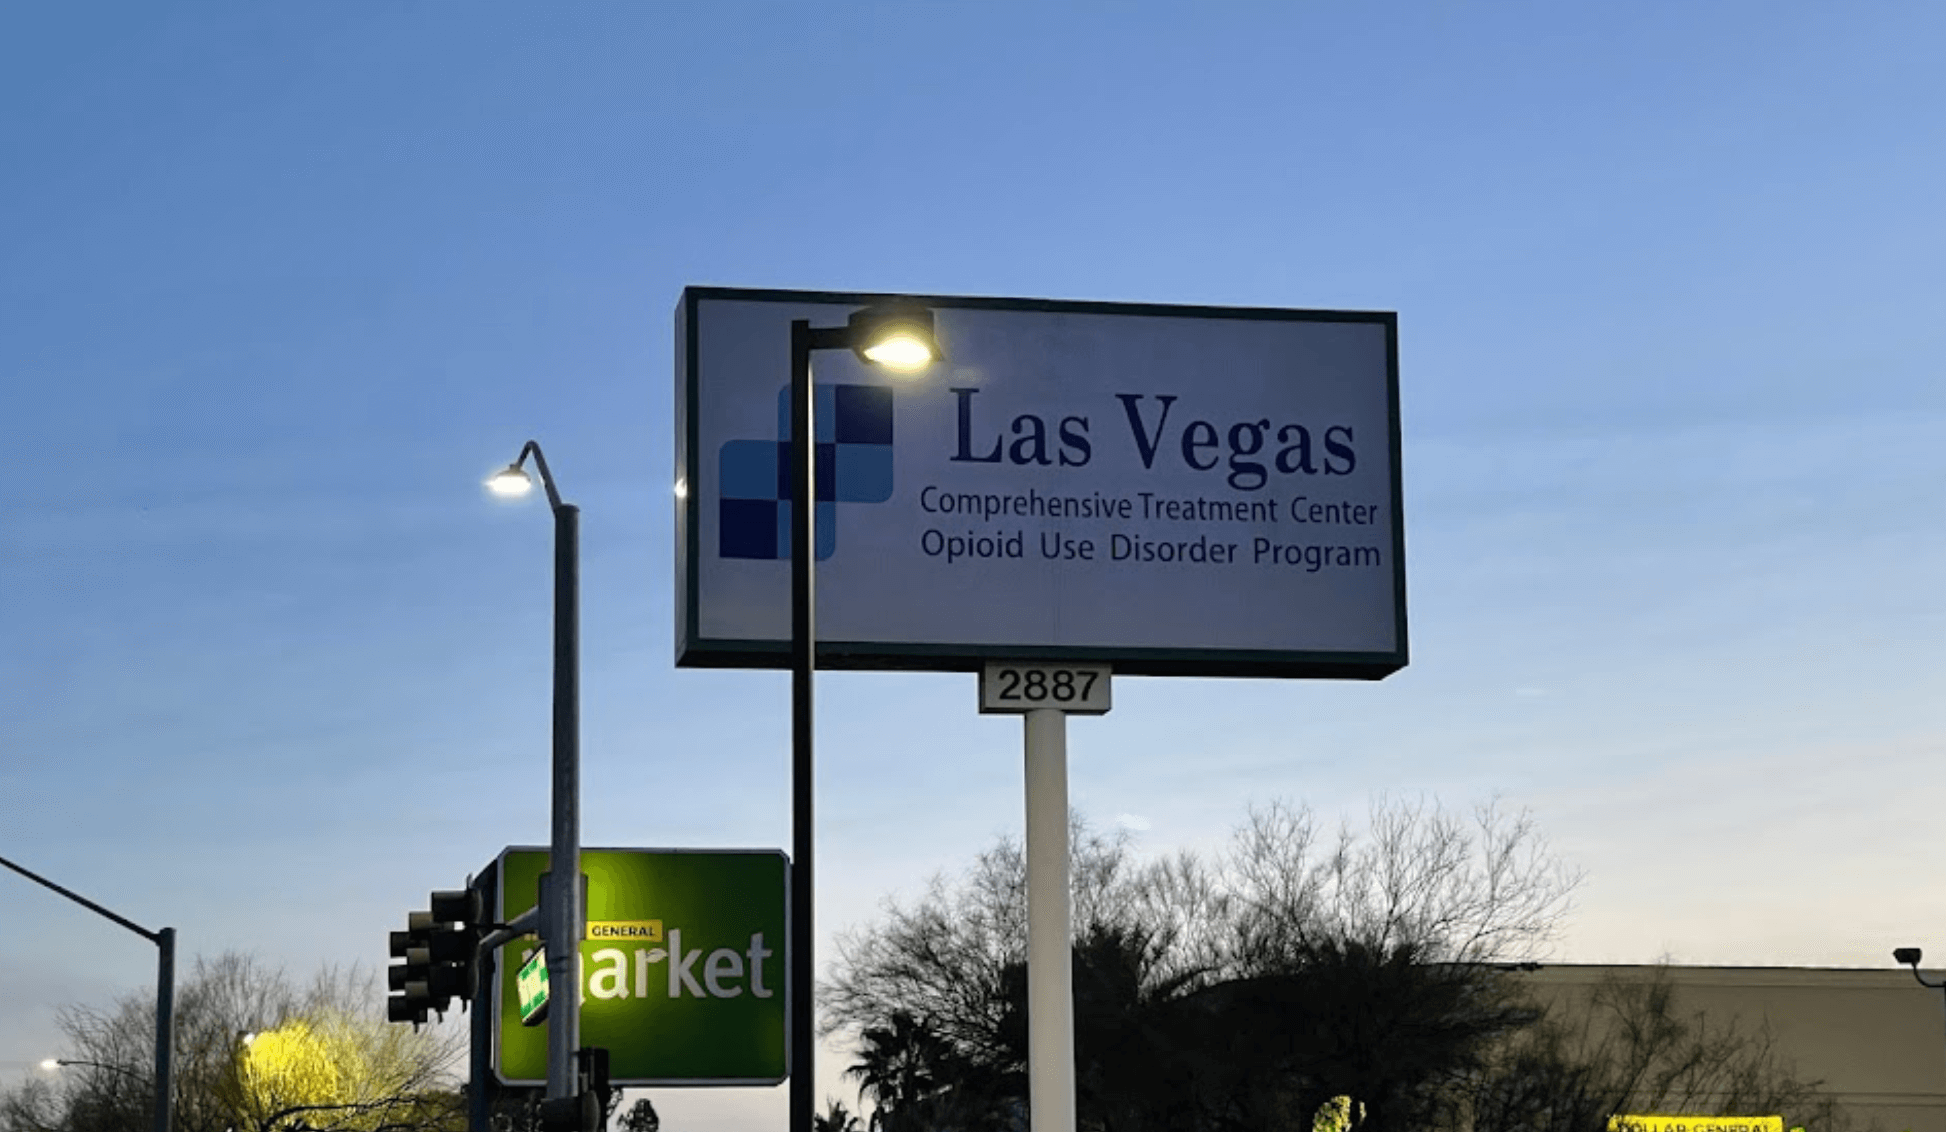 Las Vegas Comprehensive Treatment Center